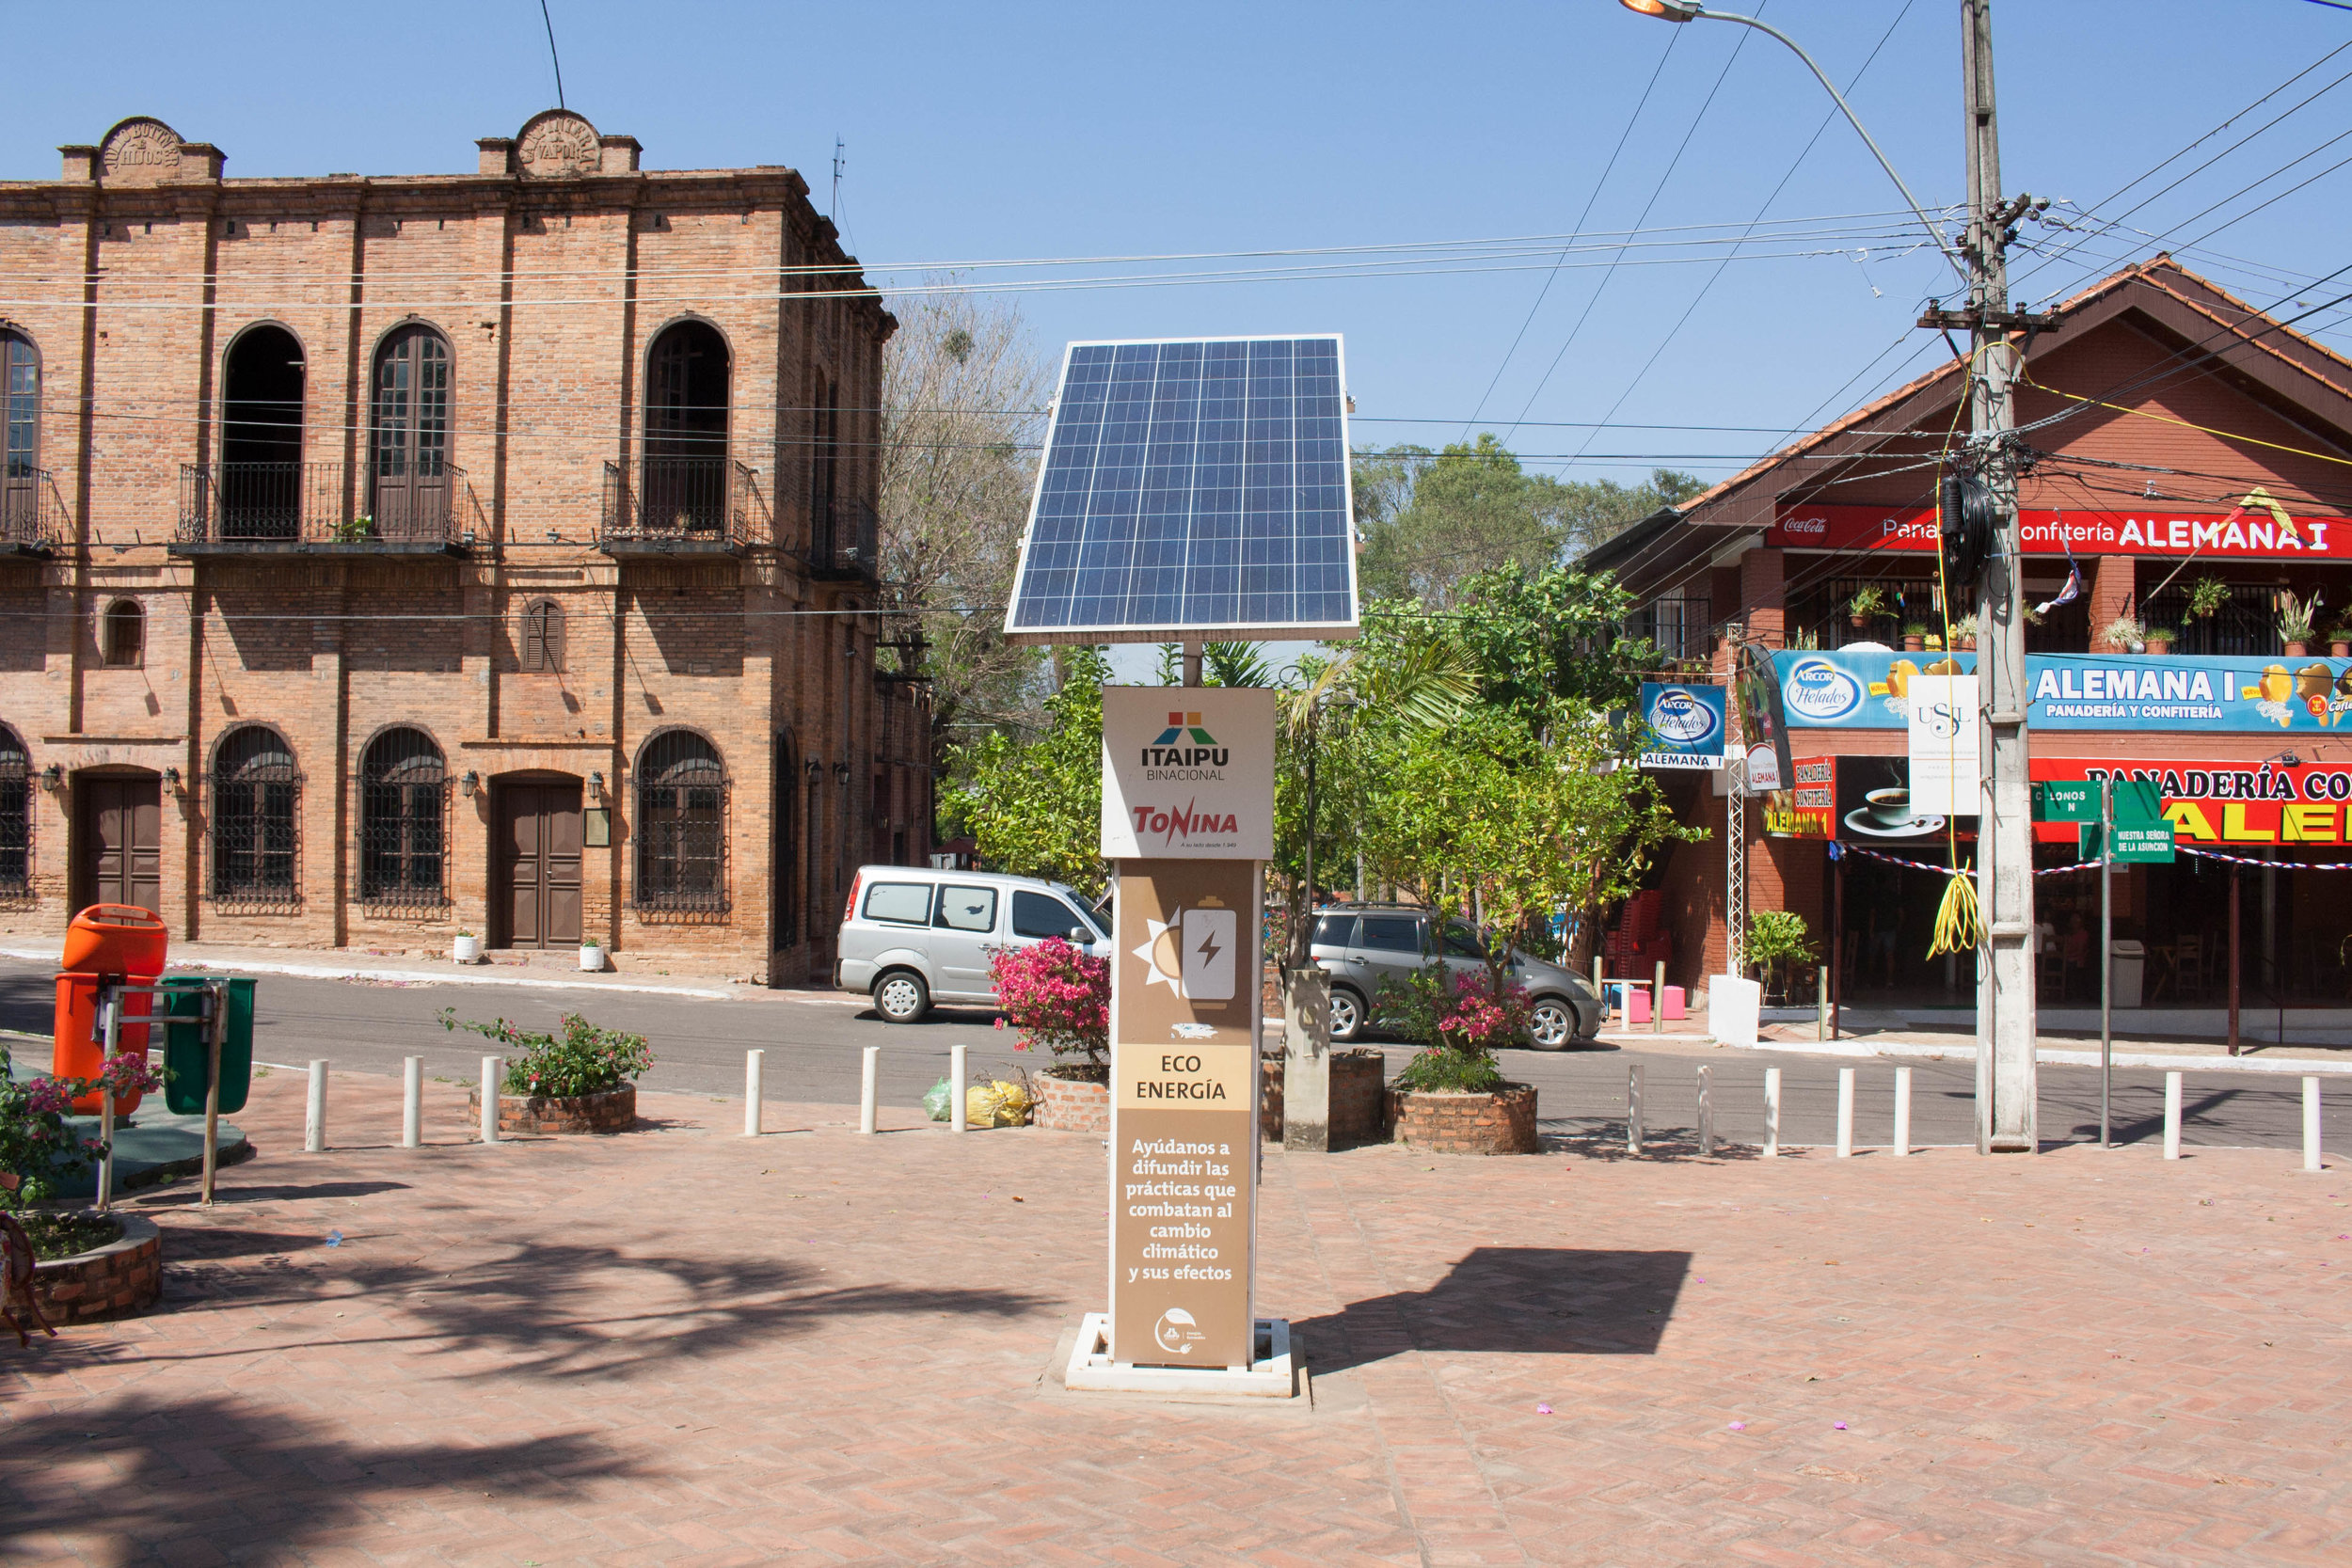  En el centro de la ciudad hay paneles solares  